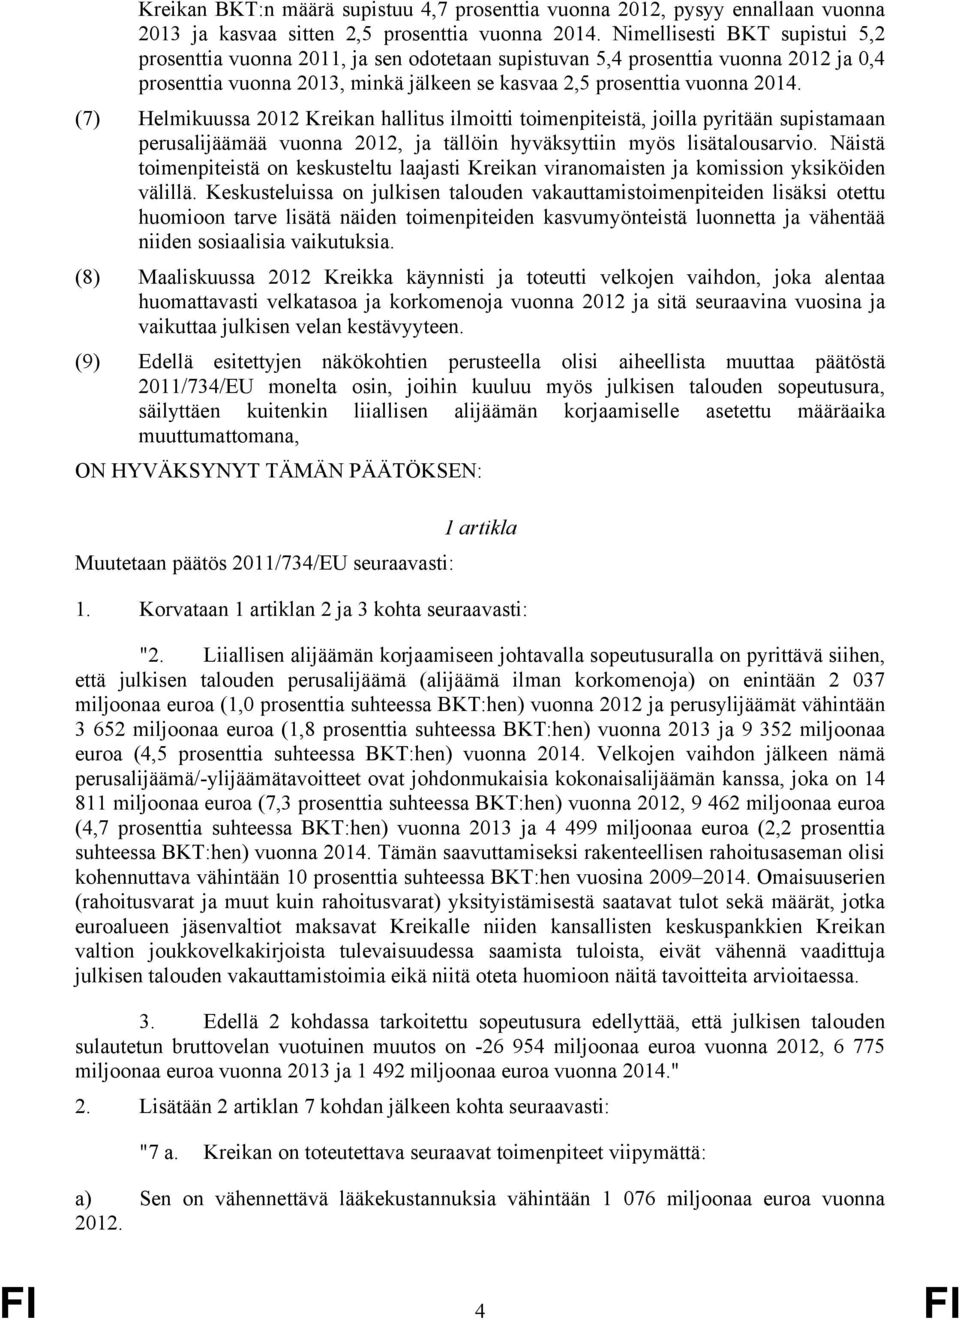 (7) Helmikuussa 2012 Kreikan hallitus ilmoitti toimenpiteistä, joilla pyritään supistamaan perusalijäämää vuonna 2012, ja tällöin hyväksyttiin myös lisätalousarvio.